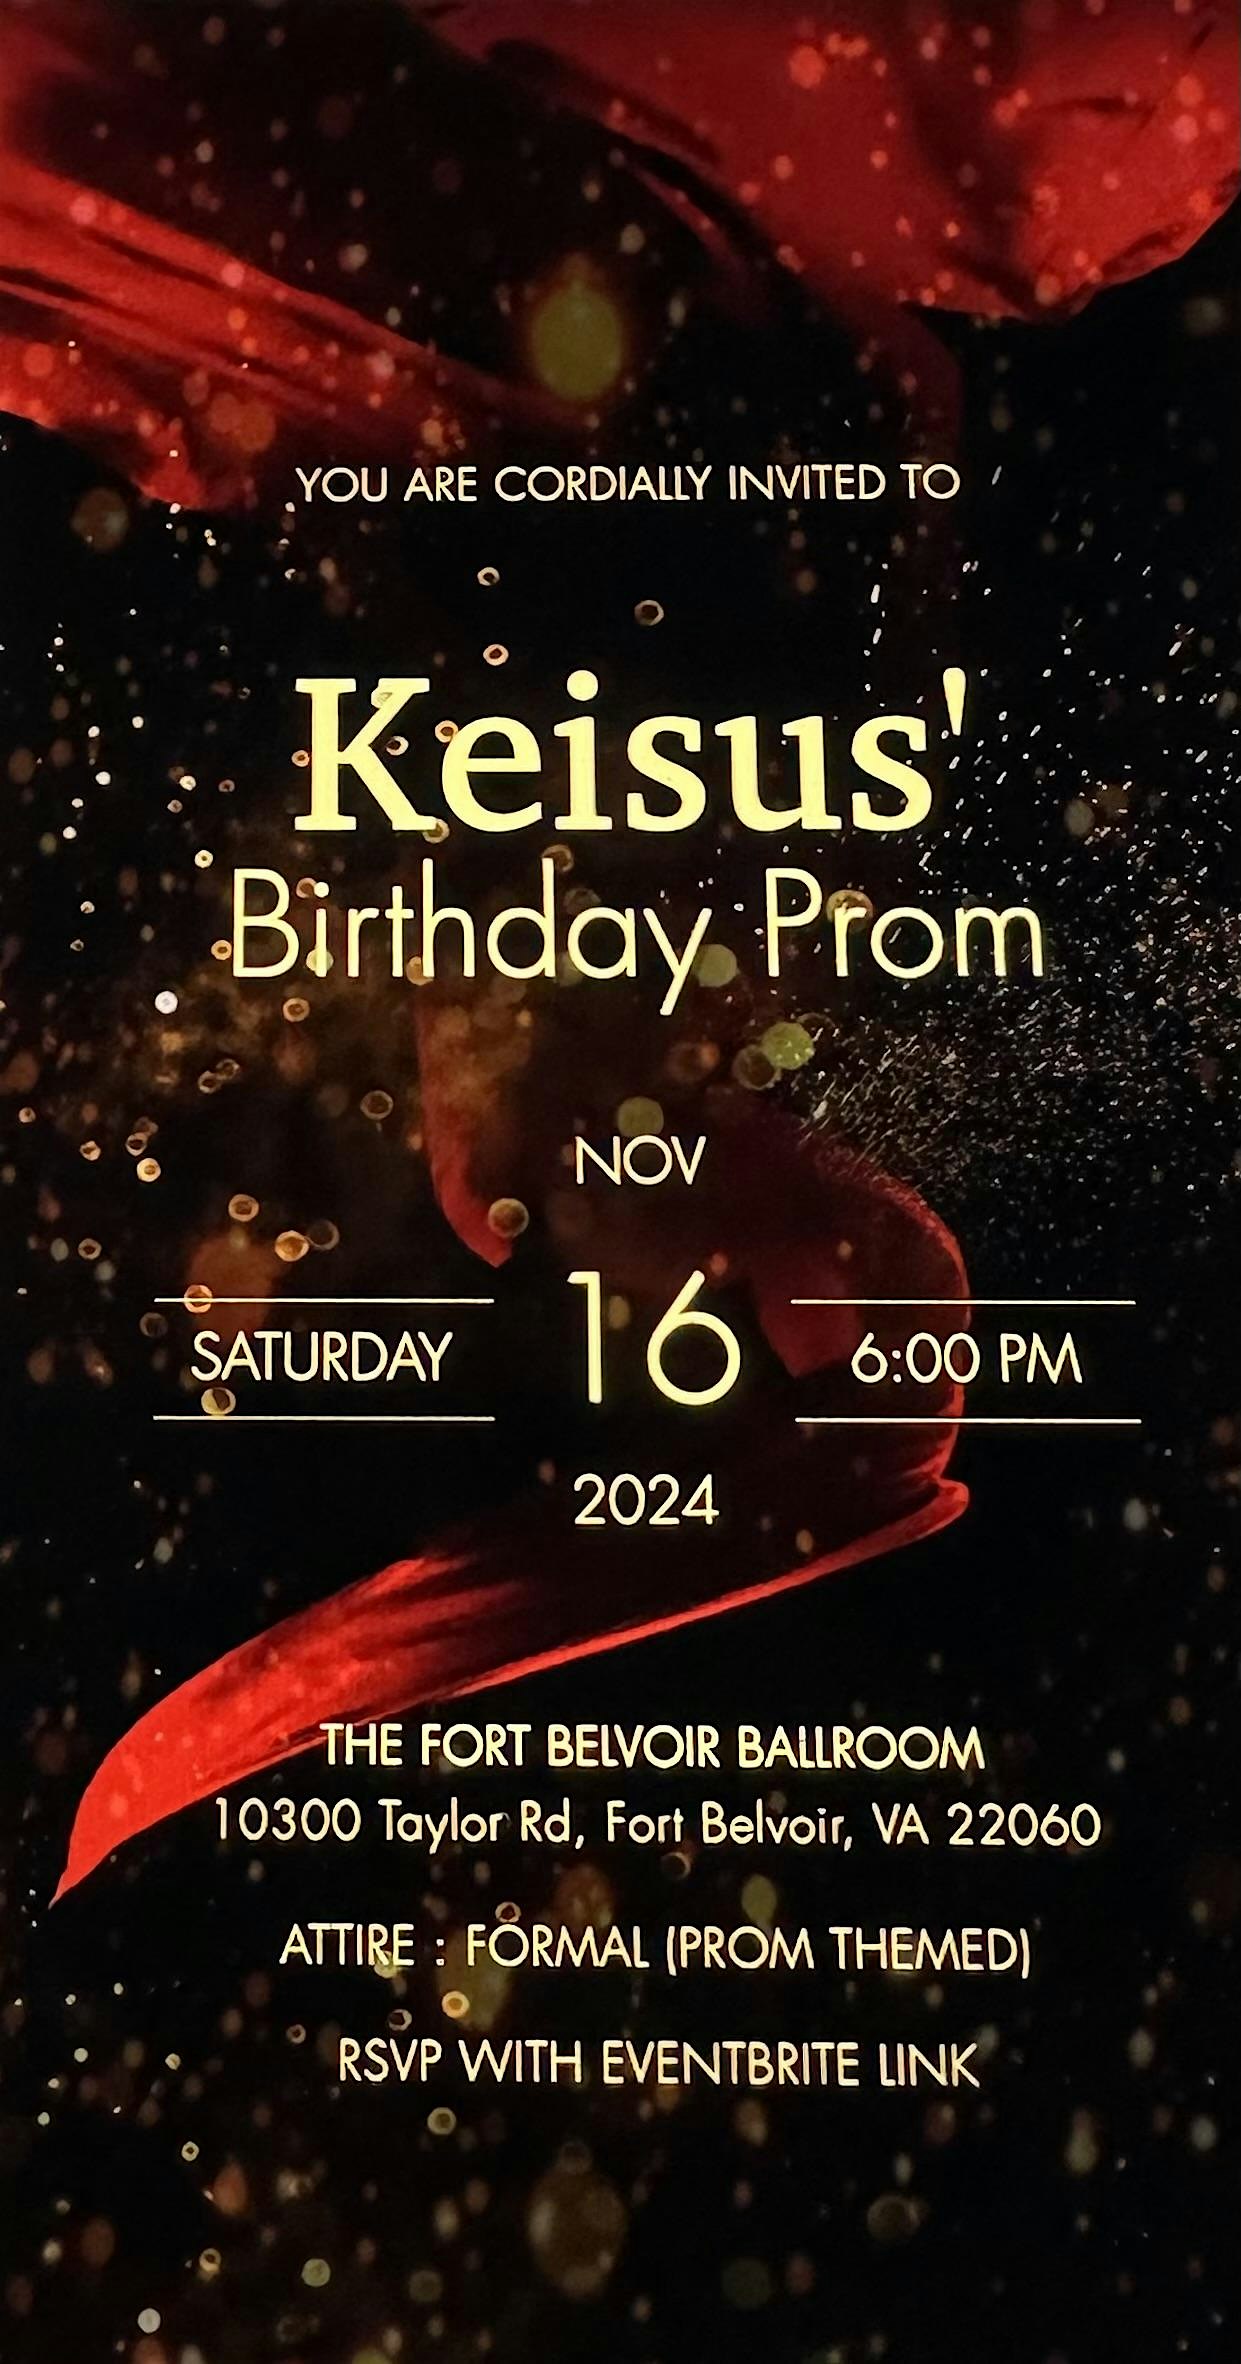 Keisus' Birthday Prom